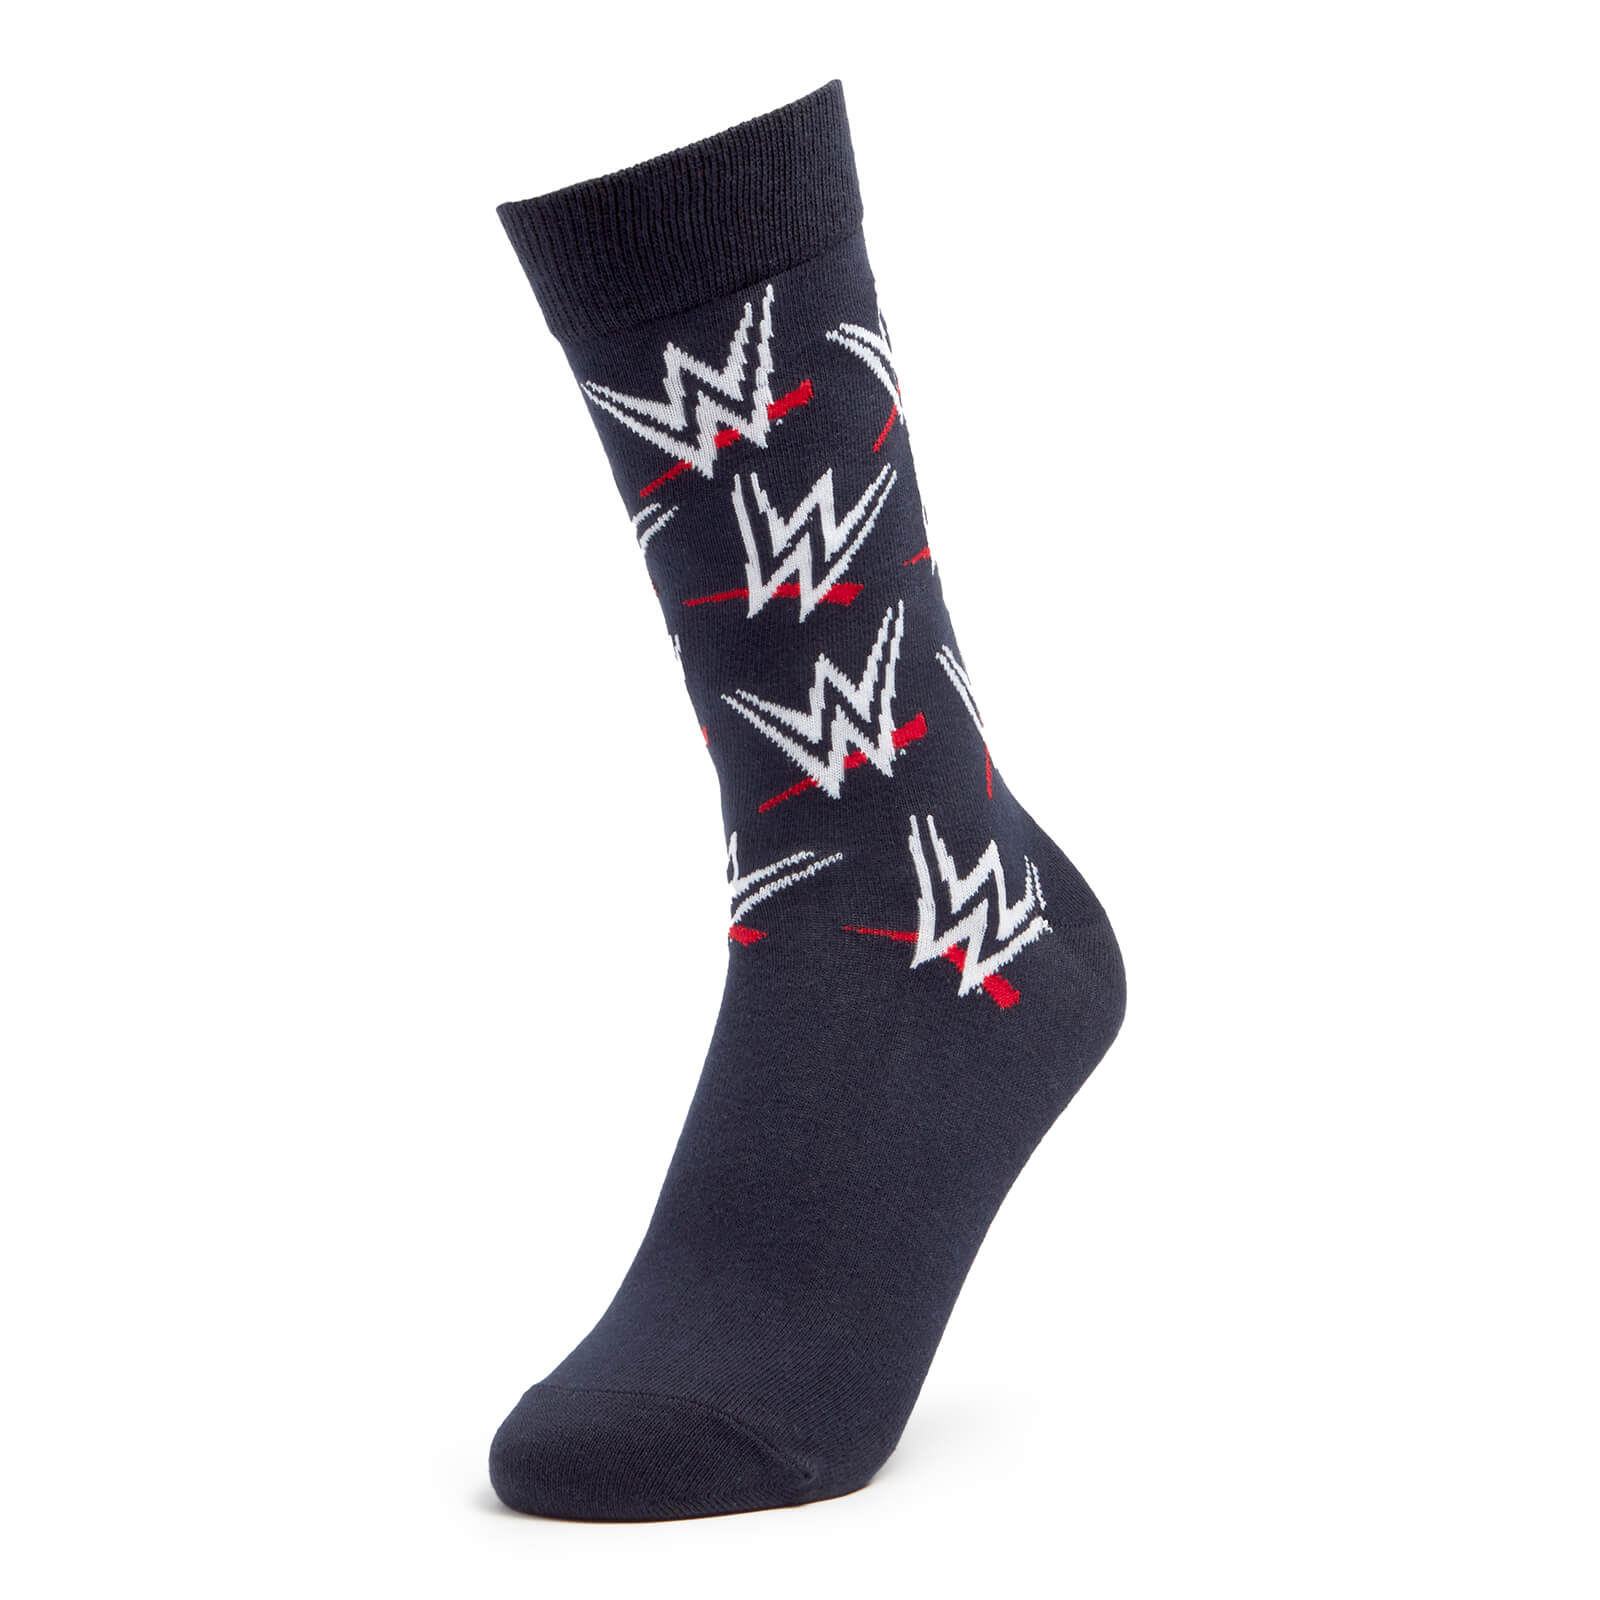 Men's WWE Logo Socks - Navy - UK 4-7.5